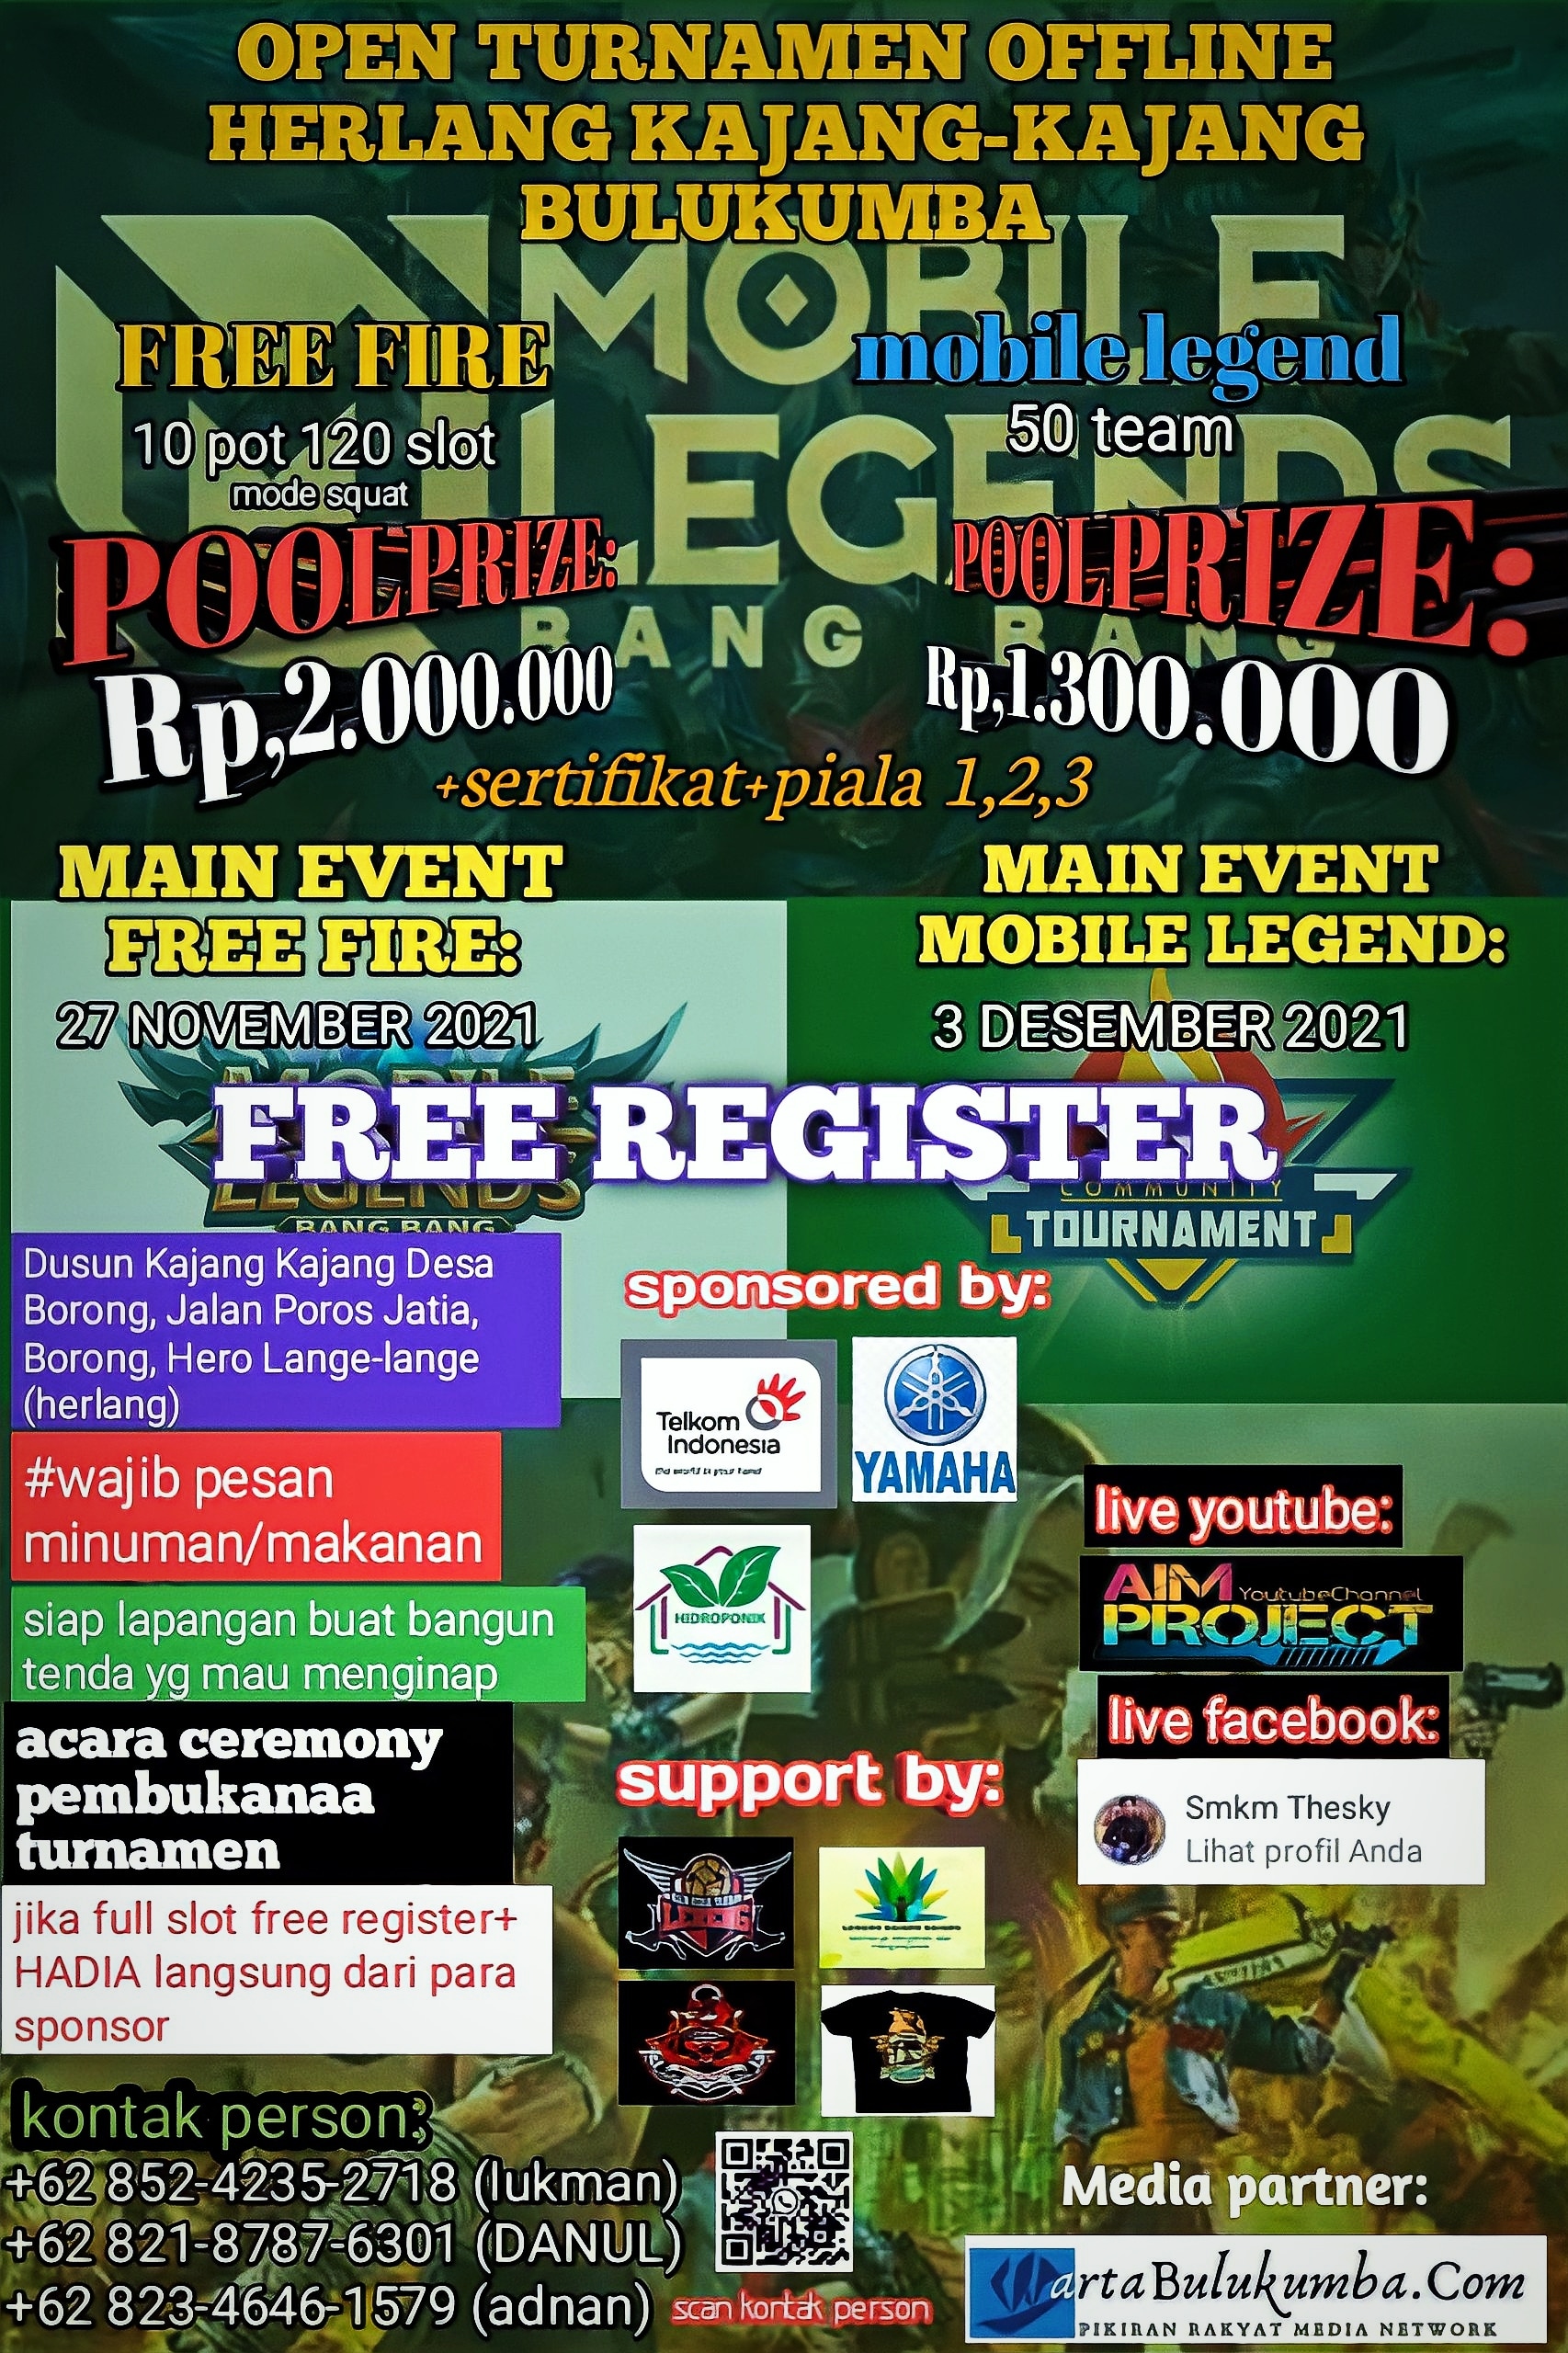 Yuk segera register gratis di turnamen akbar Free Fire dan Mobile Legends di Bulukumba Sulawesi Sela